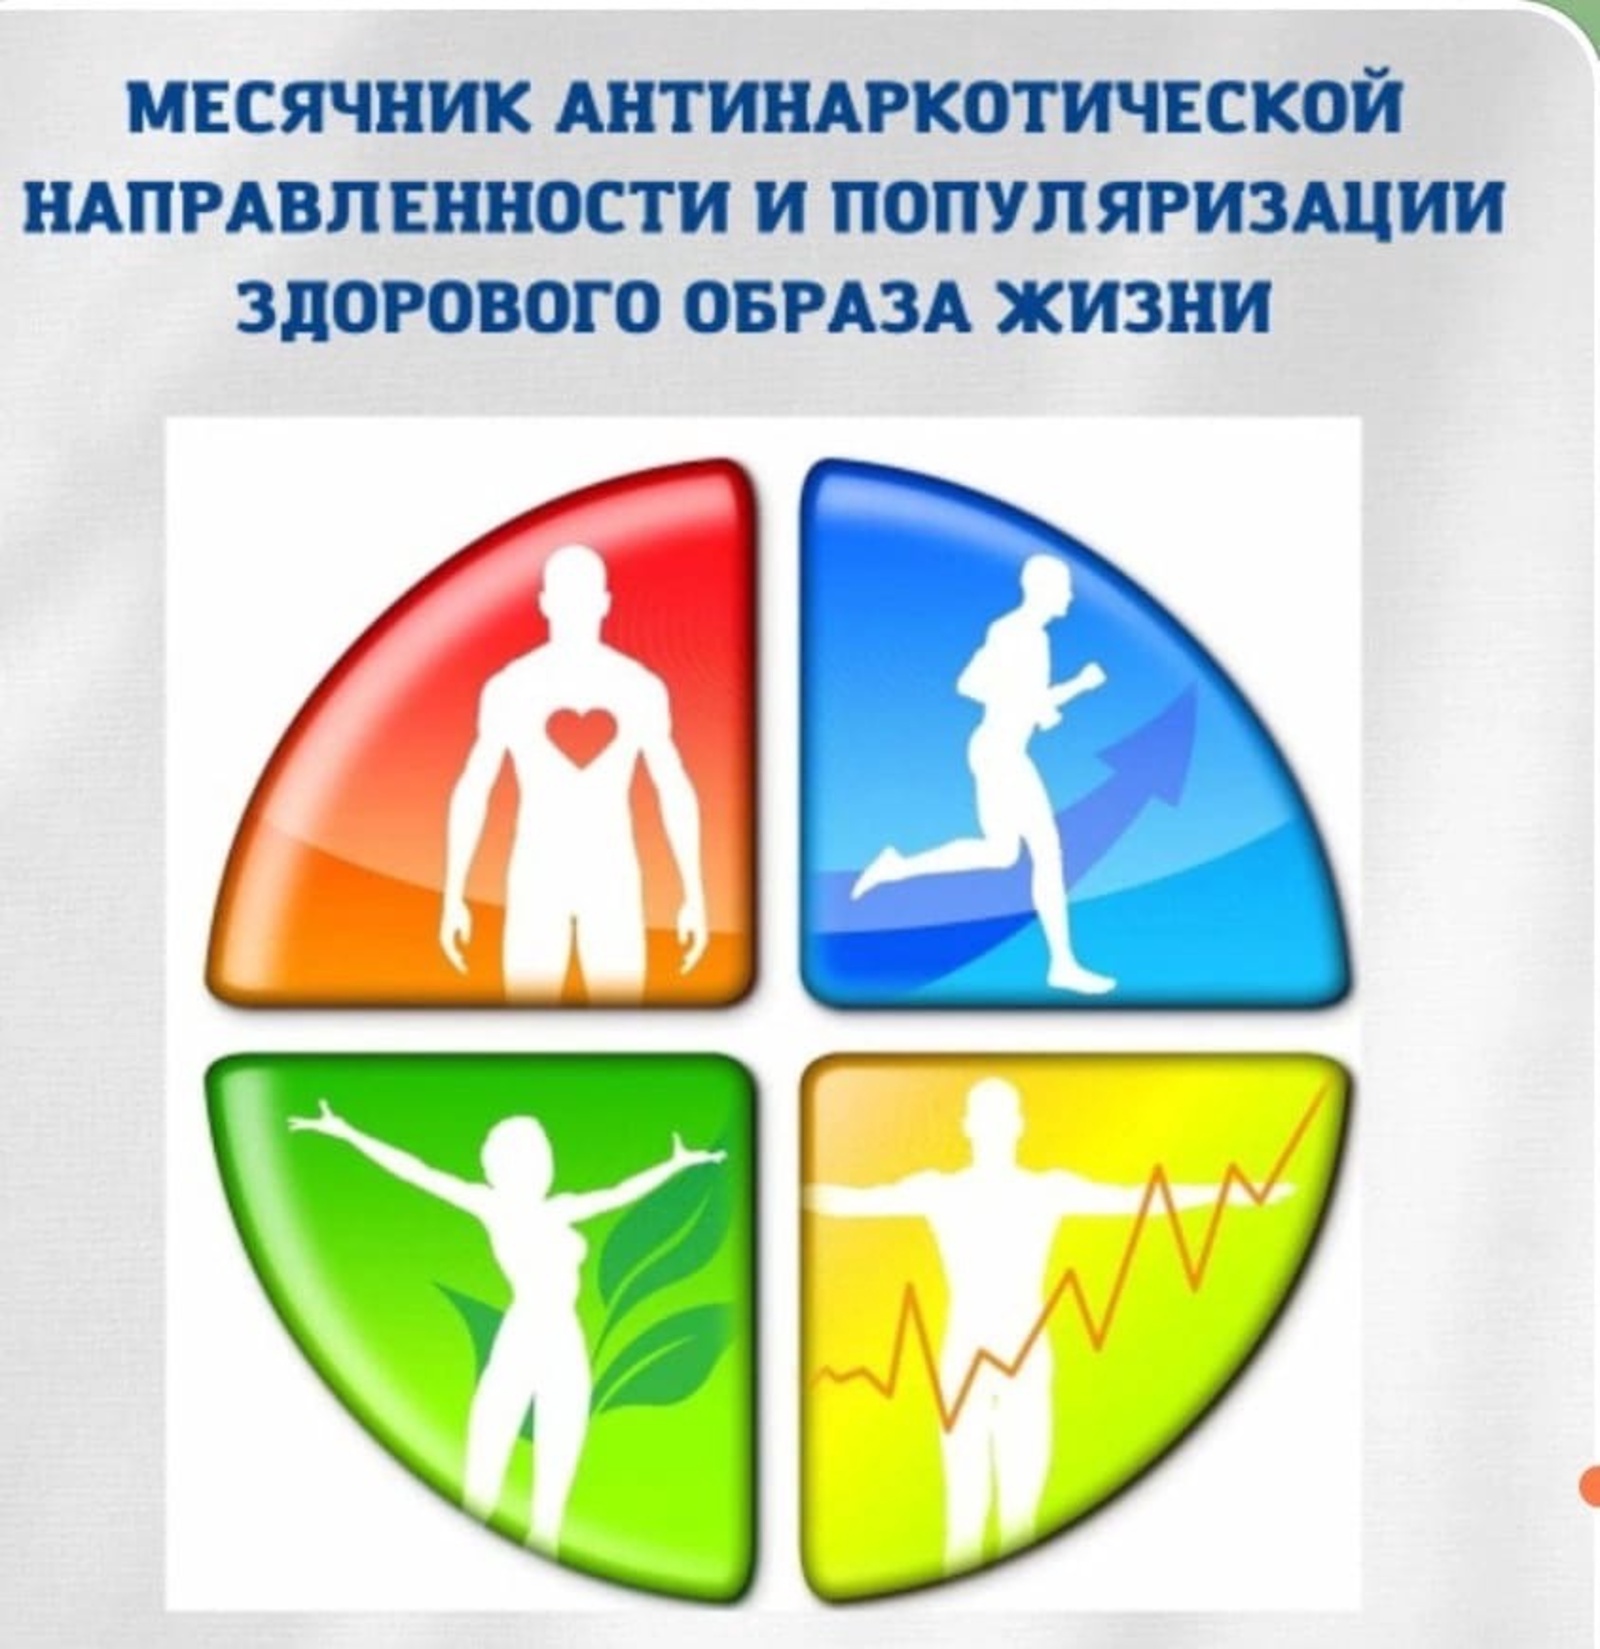 Стартовал Всероссийский месячник антинаркотической направленности и популяризации здорового образа жизни